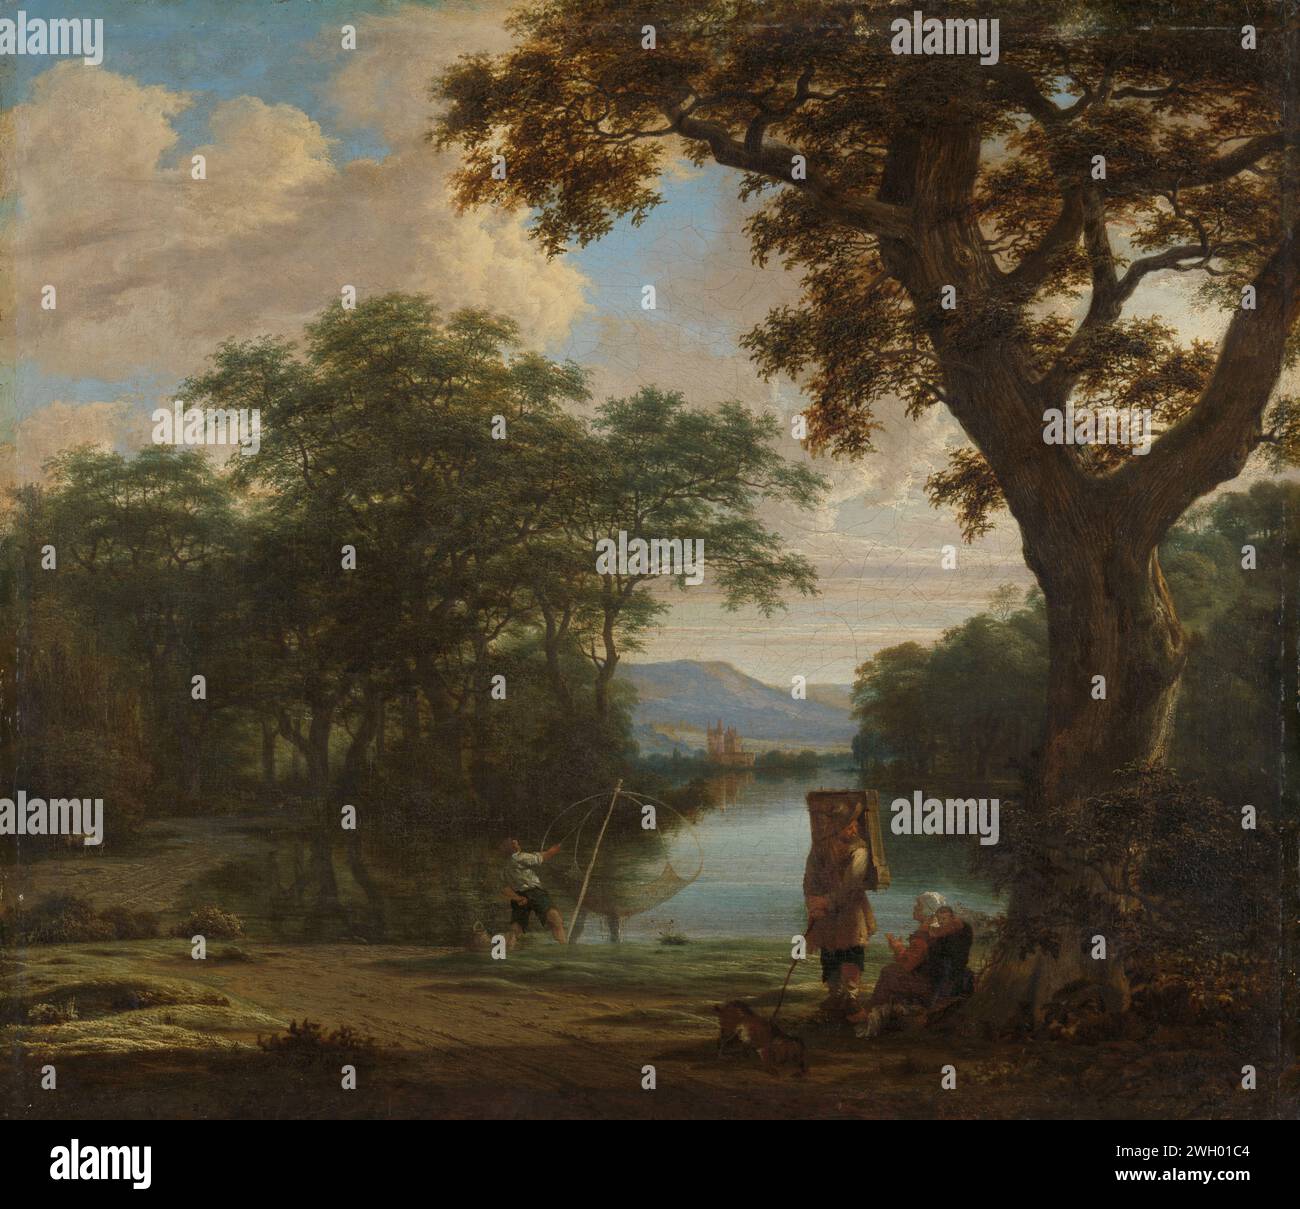 Paysage avec pêcheur avec un filet carré, Joris van der Haagen, c. 1645 - c. 1655 peinture paysage avec pêcheur avec un filet croisé. Dans un étang de la forêt, un pêcheur sort son filet de l'eau. Au premier plan un Marskramer dans une femme assise sous un grand arbre. toile. Peinture à l'huile (peinture) RIVIÈRE. Filet de pêche. tampons Banque D'Images